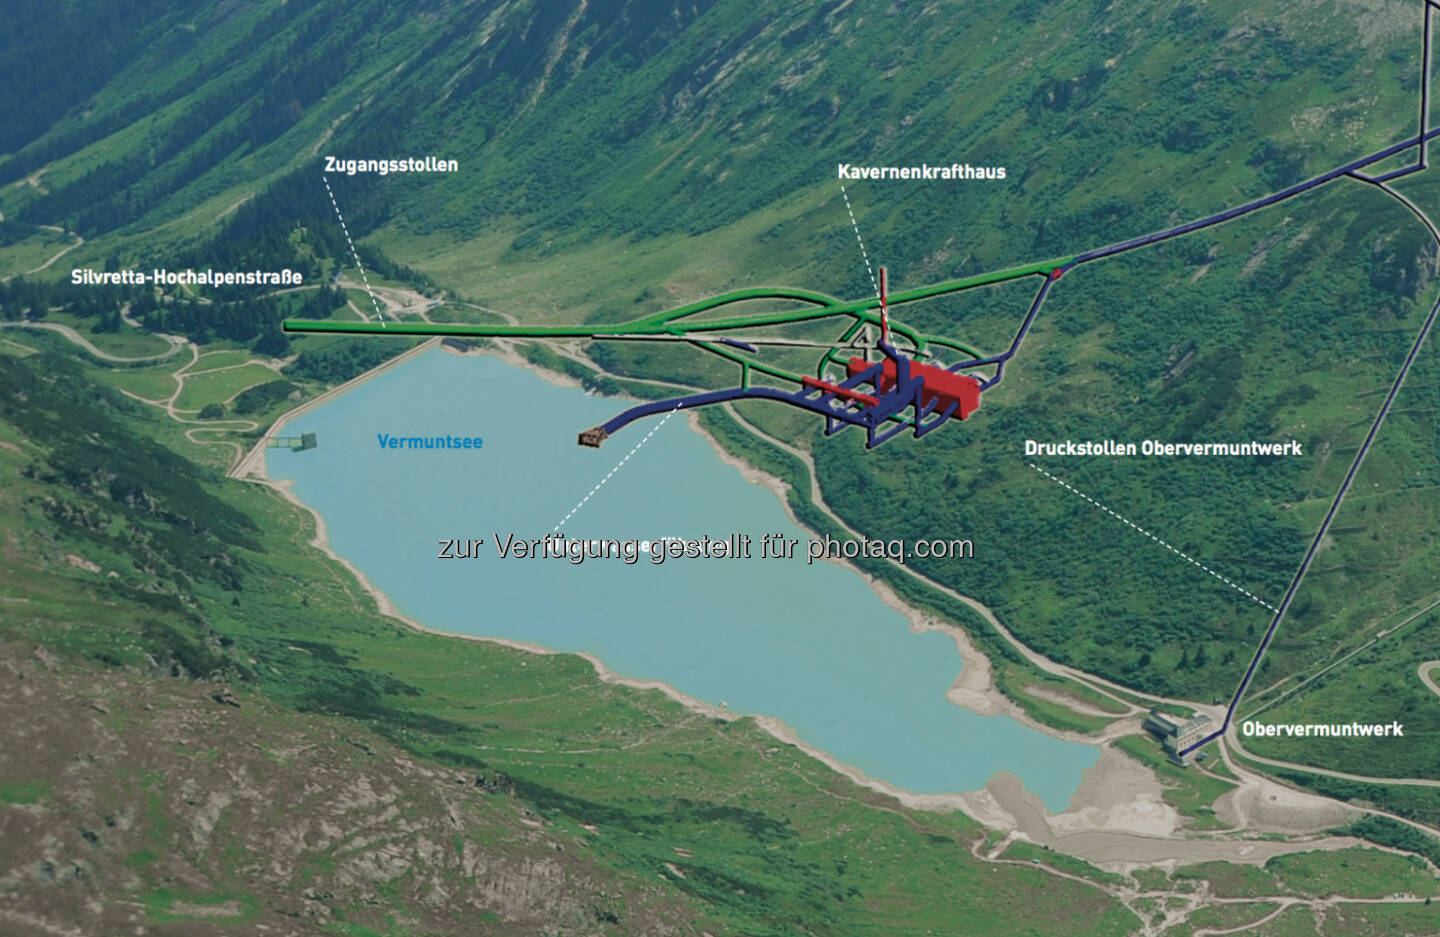 Porr baut: Das Pumpspeicherkraftwerk Obervermunt II wird mit einer Leistung von 360 MW im Turbinen- und Pumpbetrieb das zweitgrößte Kraftwerk der Vorarlberger Illwerke sein. Es entsteht unterirdisch im Montafon zwischen den Stauseen Silvretta und Vermunt und ist als Parallelkraftwerk zum bereits bestehenden Obervermuntwerk konzipiert.